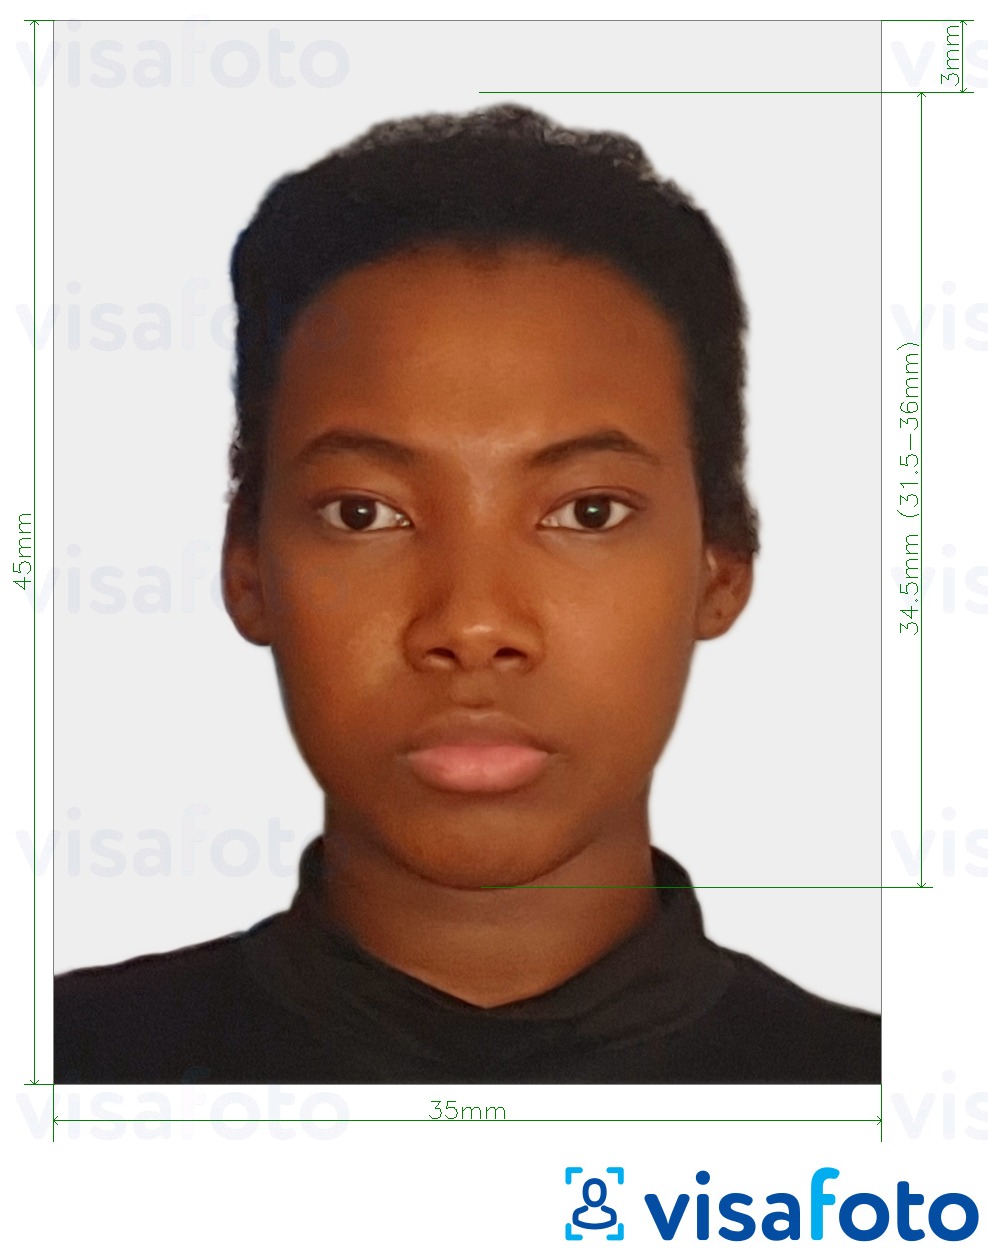 Contoh dari foto untuk Visa Togo 4.5x3.5 cm (45x35mm) dengan ukuran spesifikasi yang tepat